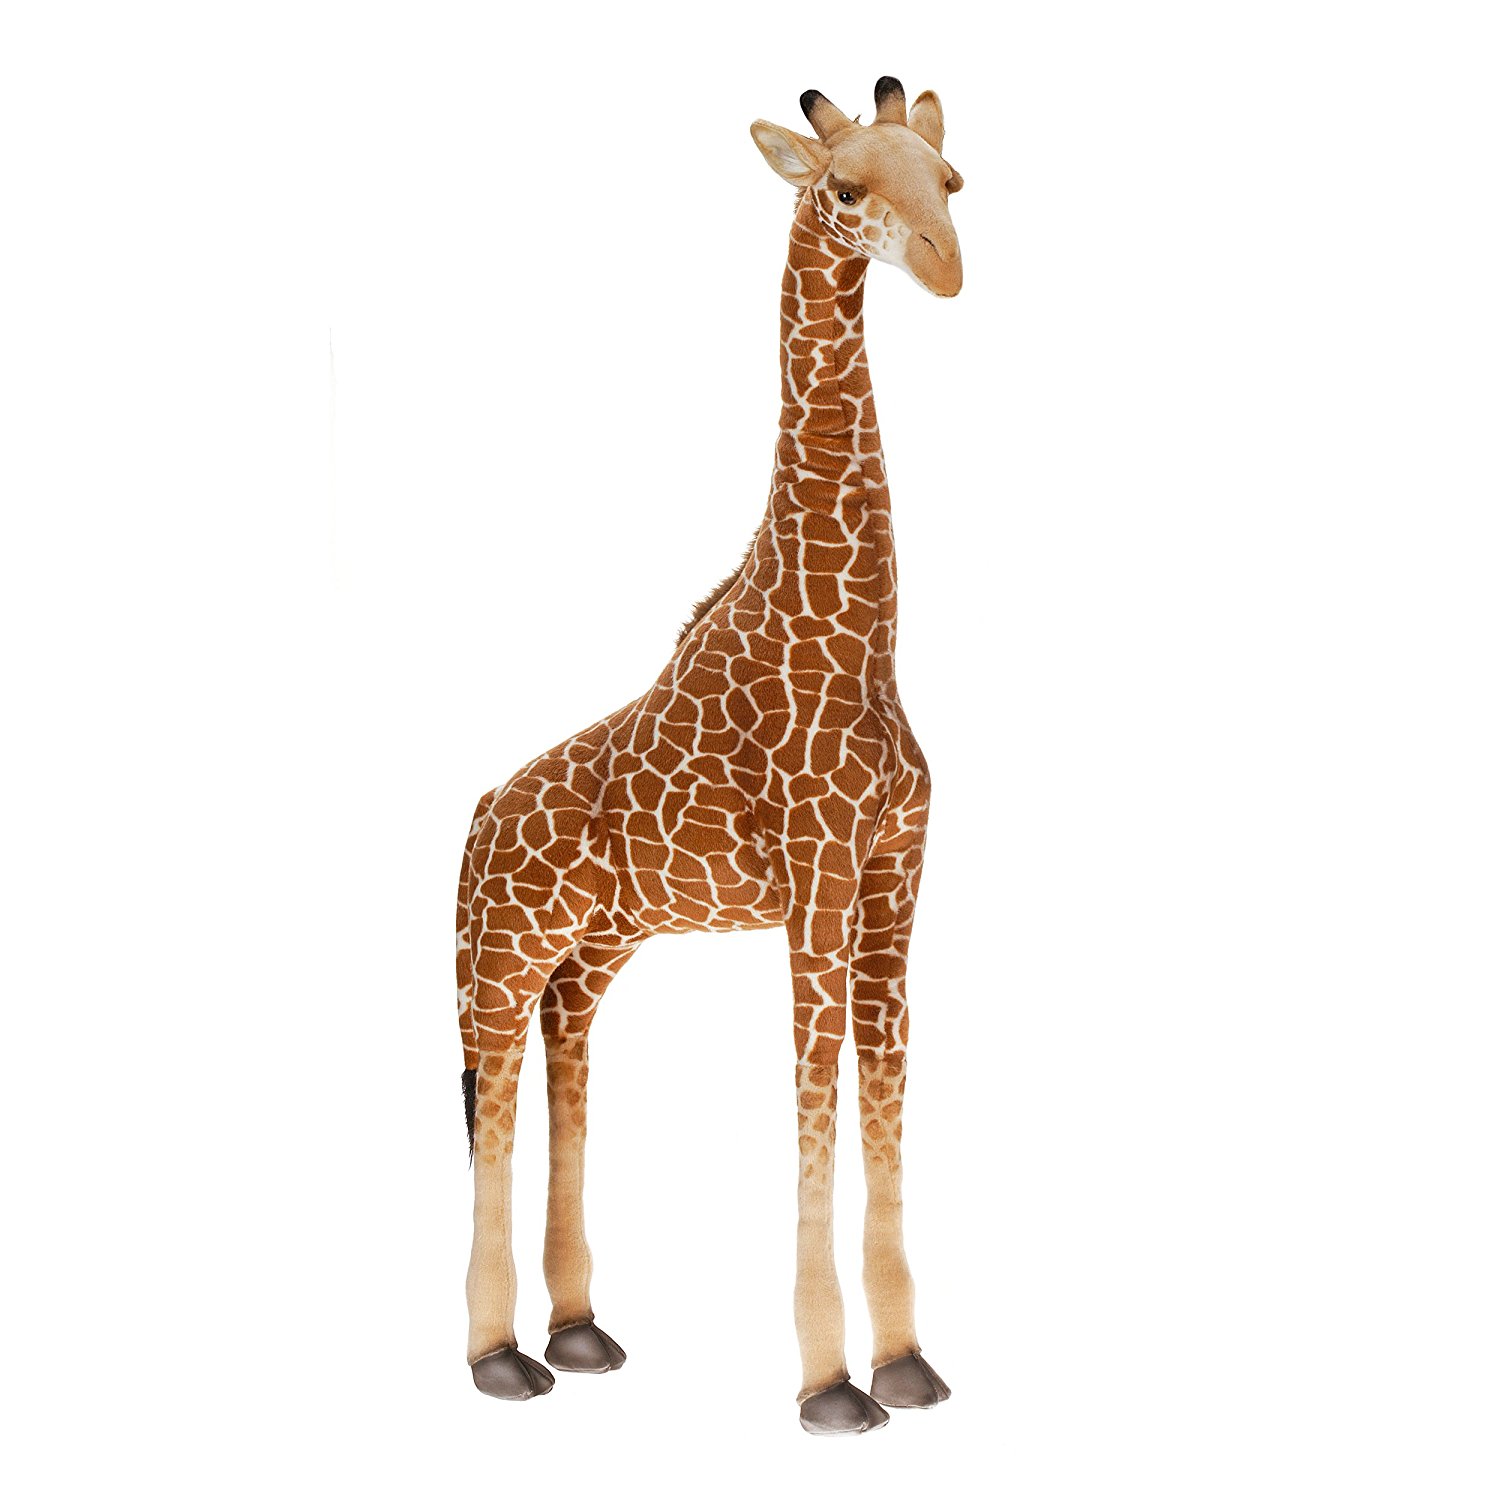 kmart giant giraffe